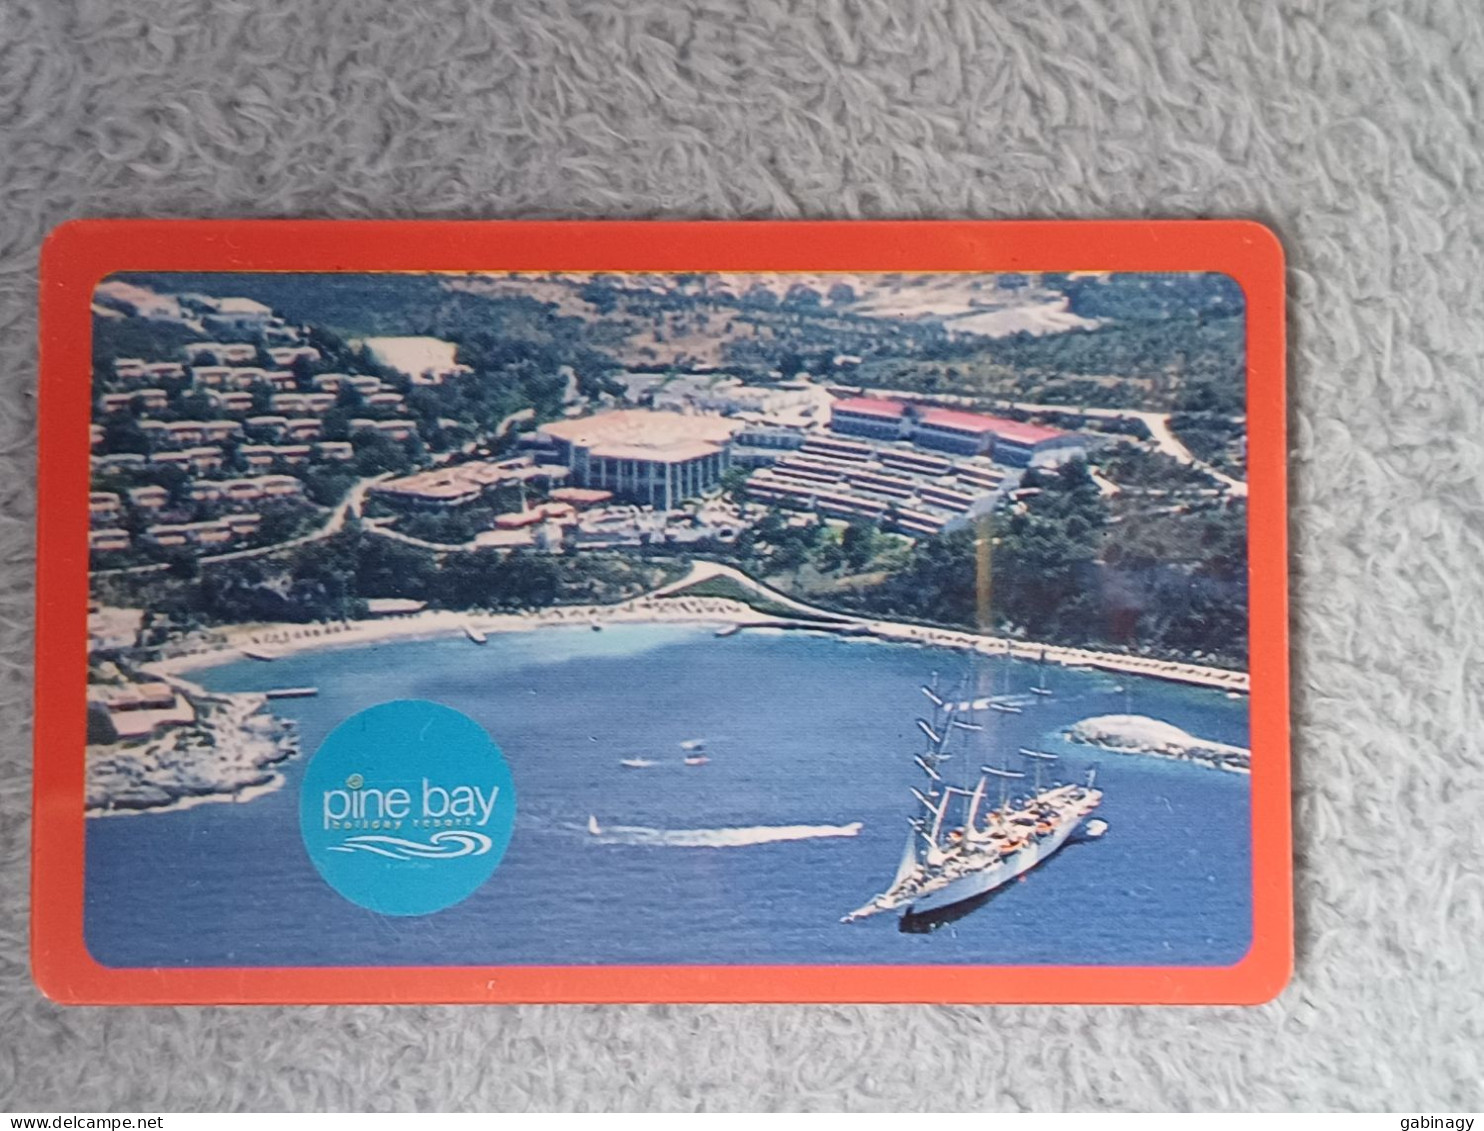 HOTEL KEYS - 2552 - TURKEY - PINE BAY - Hotel Keycards